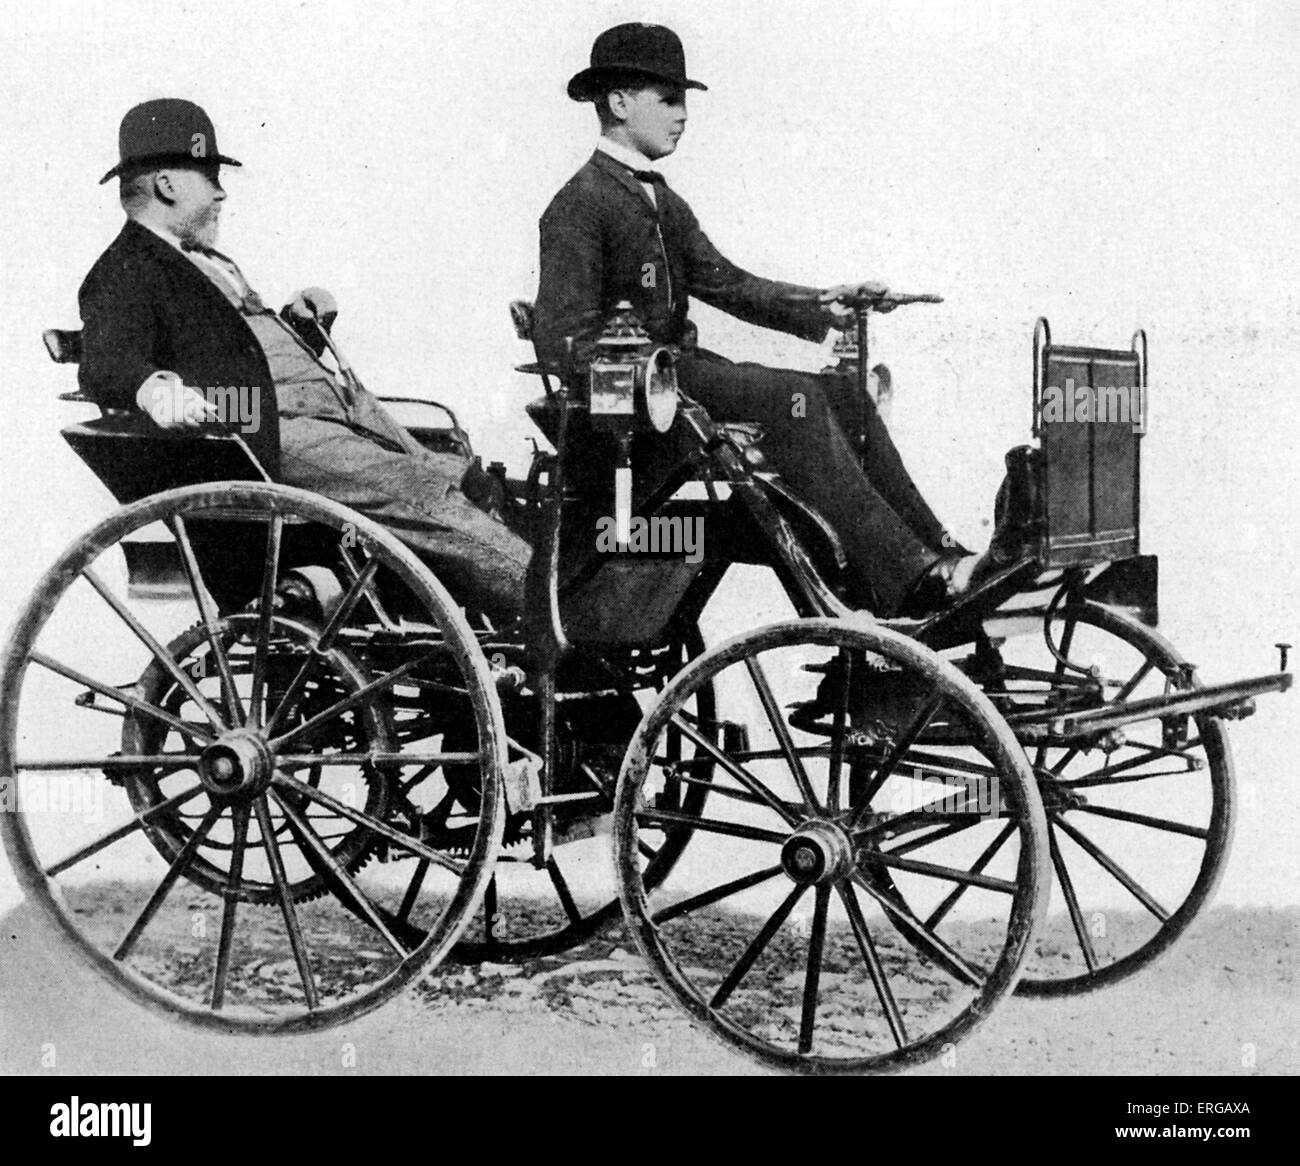 Gottlieb Daimler (17 mars 1834 - 6 mars 1900) - pionnier allemand des moteurs à combustion interne et le développement de l'automobile ; Banque D'Images